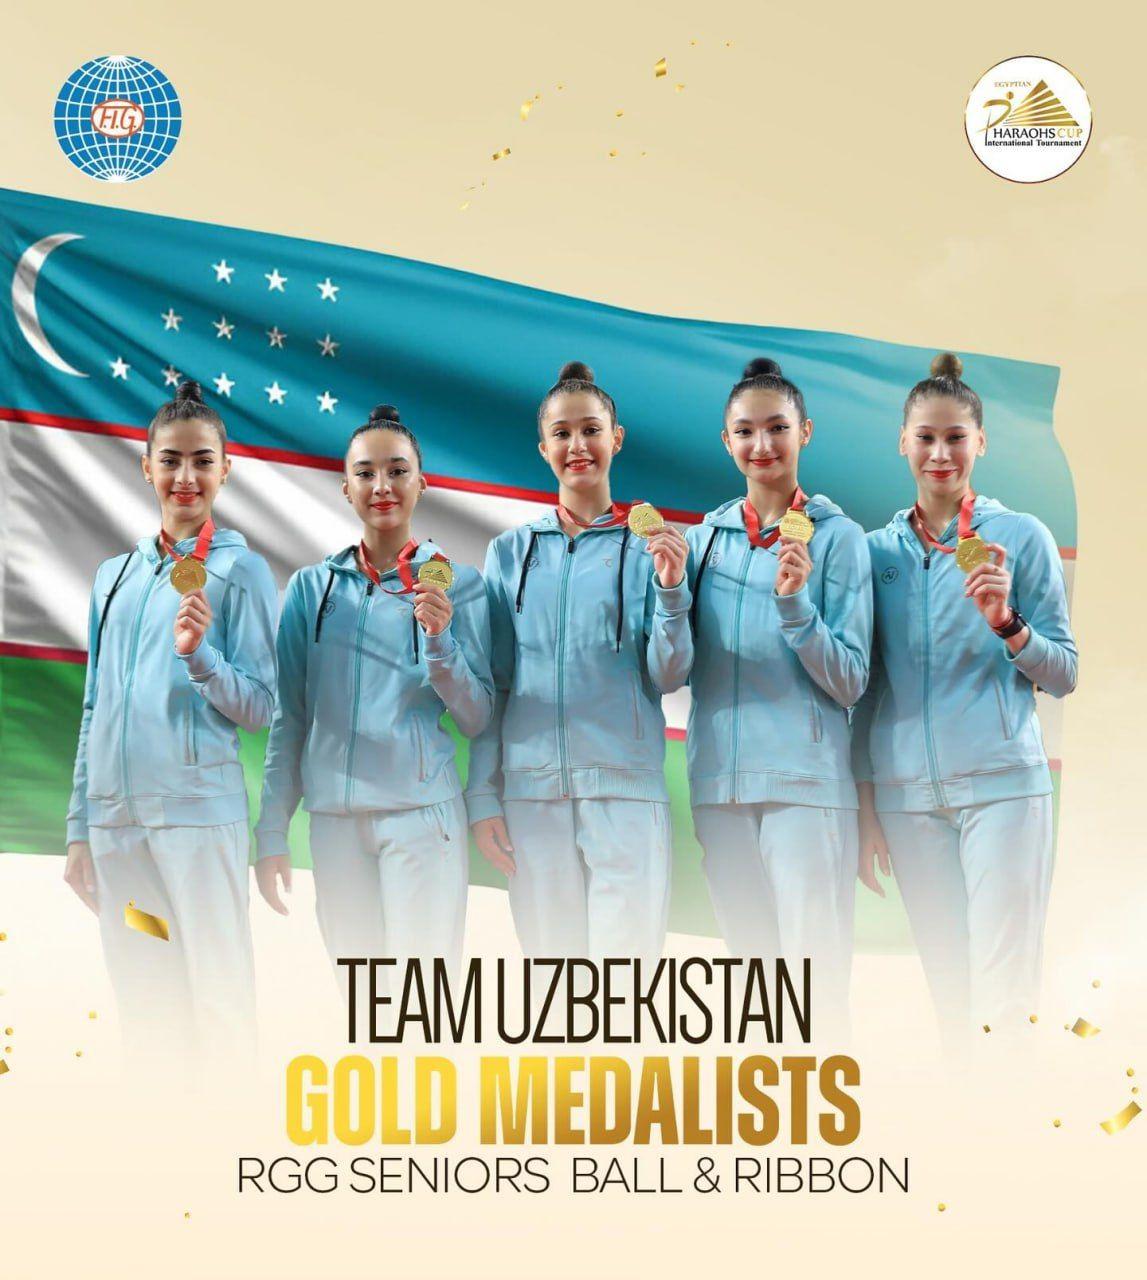 Uzbekistan's gymnasts win gold medals